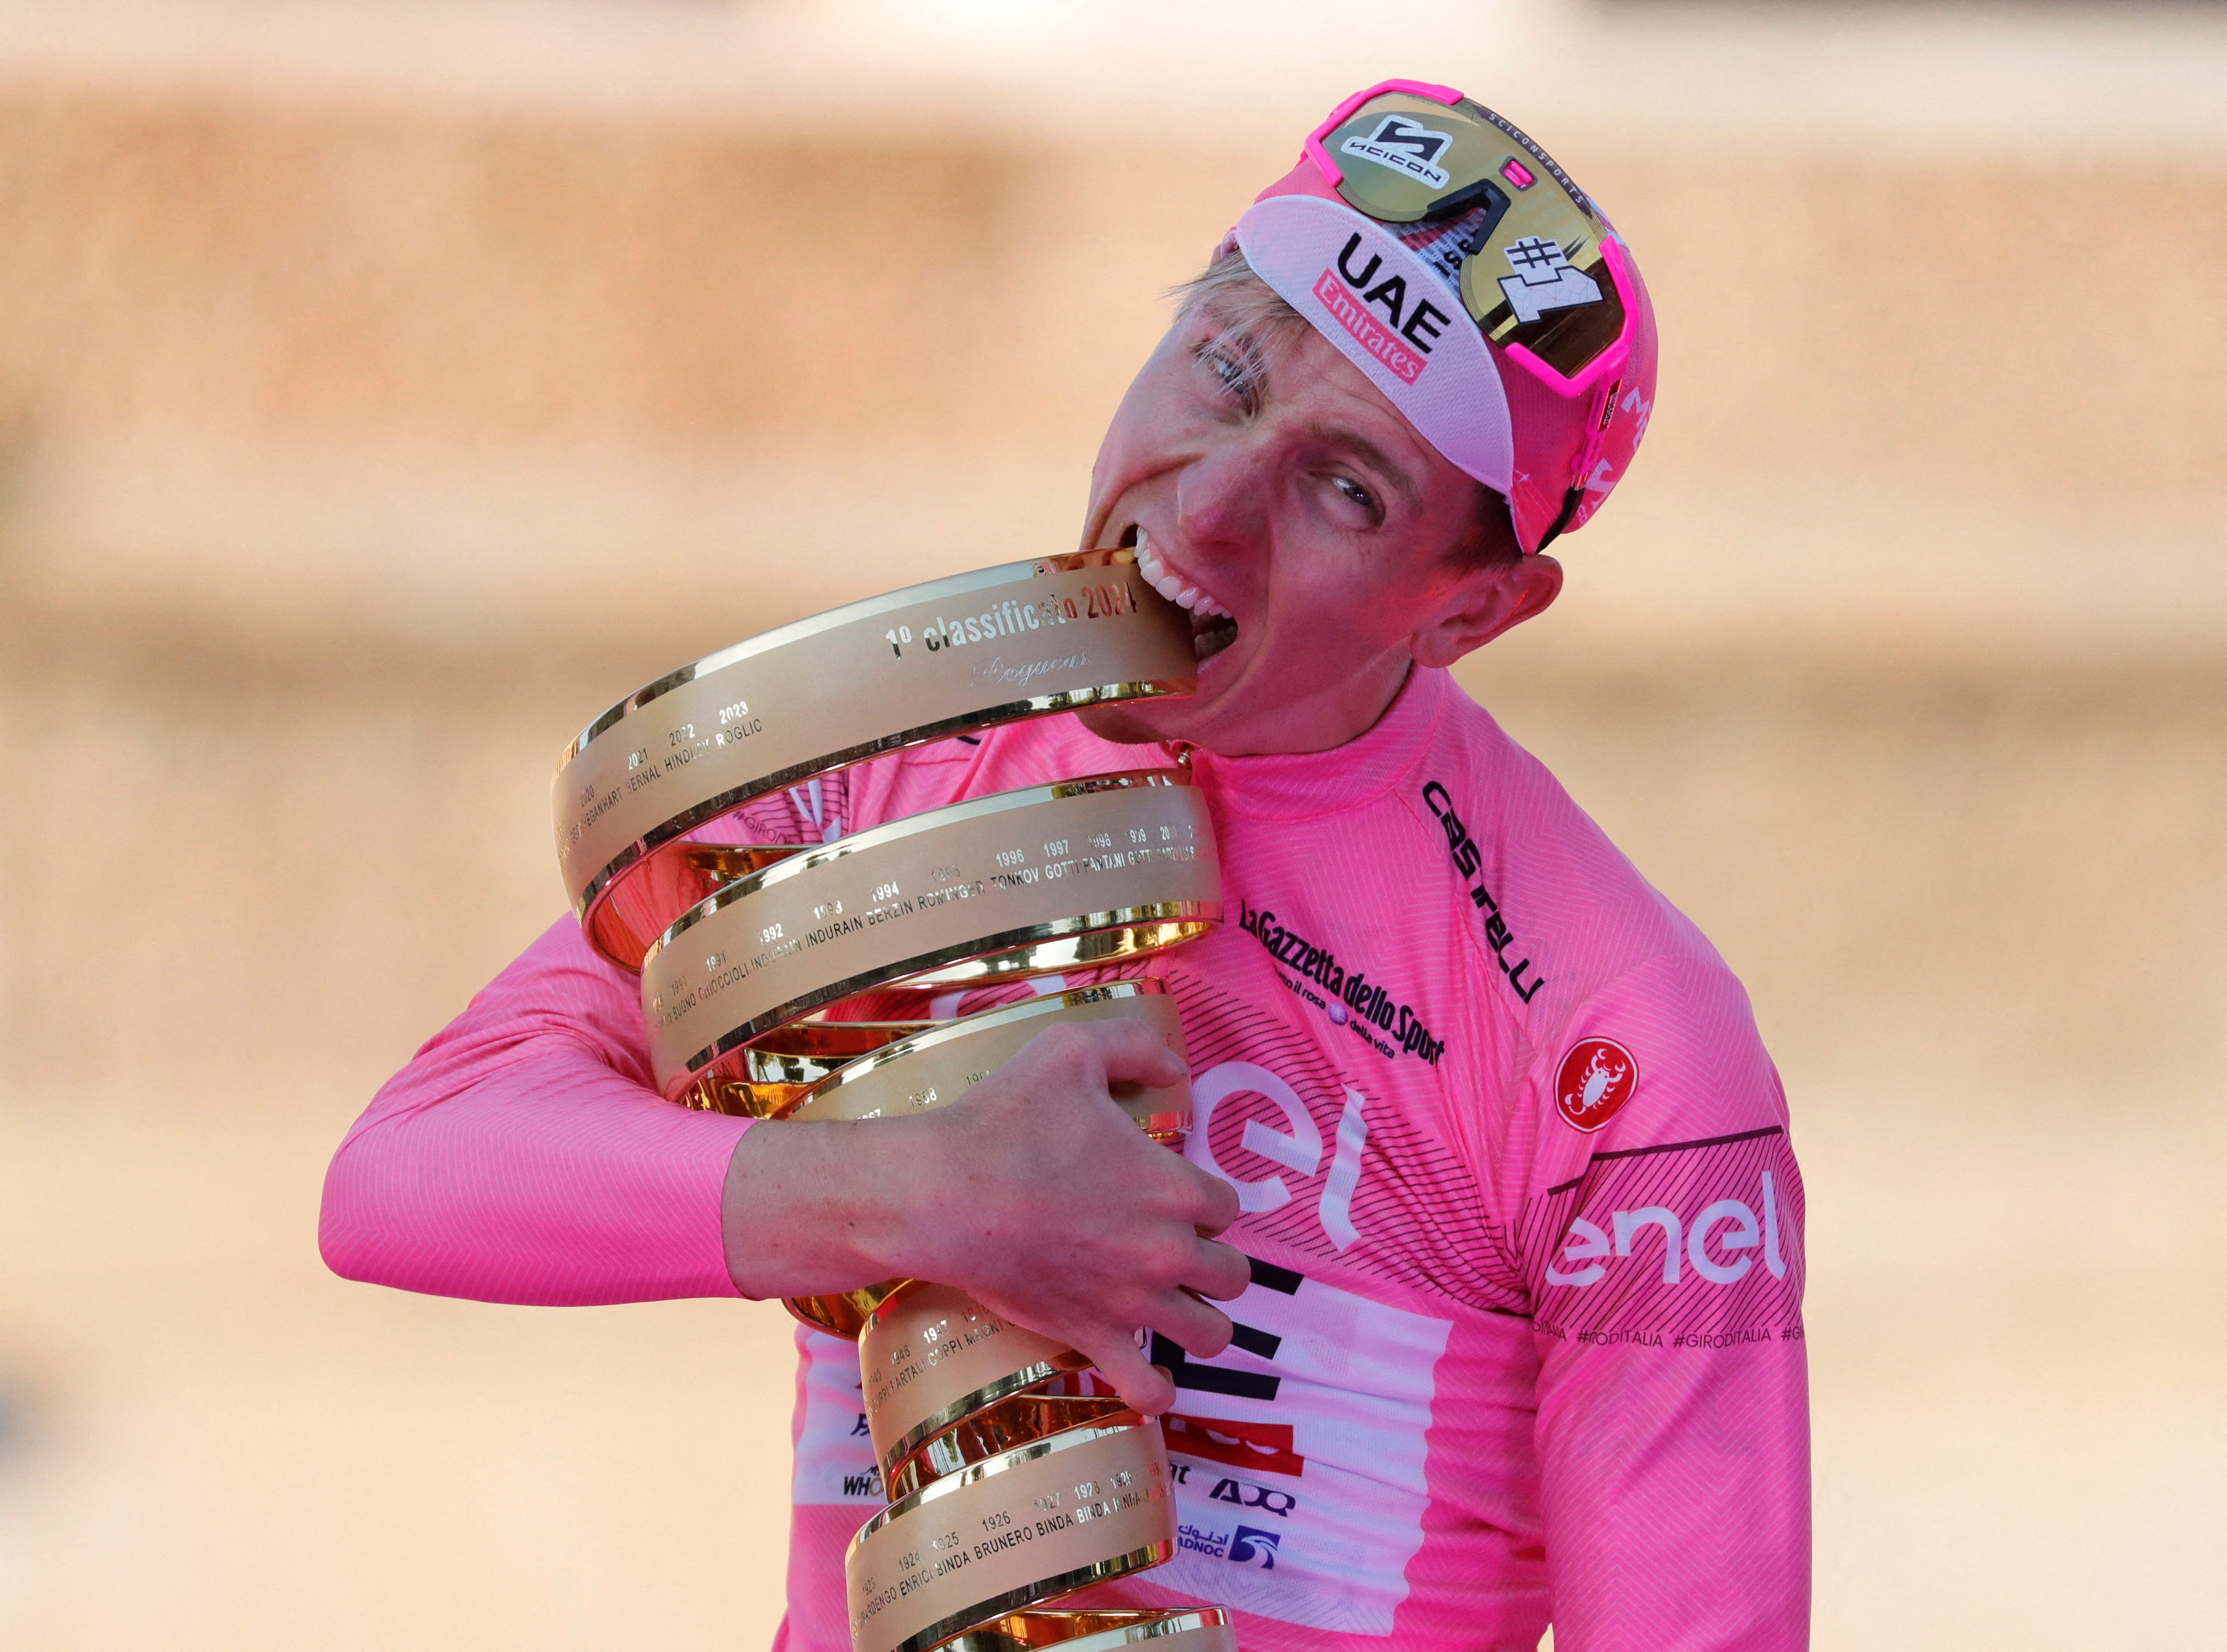 Giro d'Italia - Stage 21 - Roma to Roma